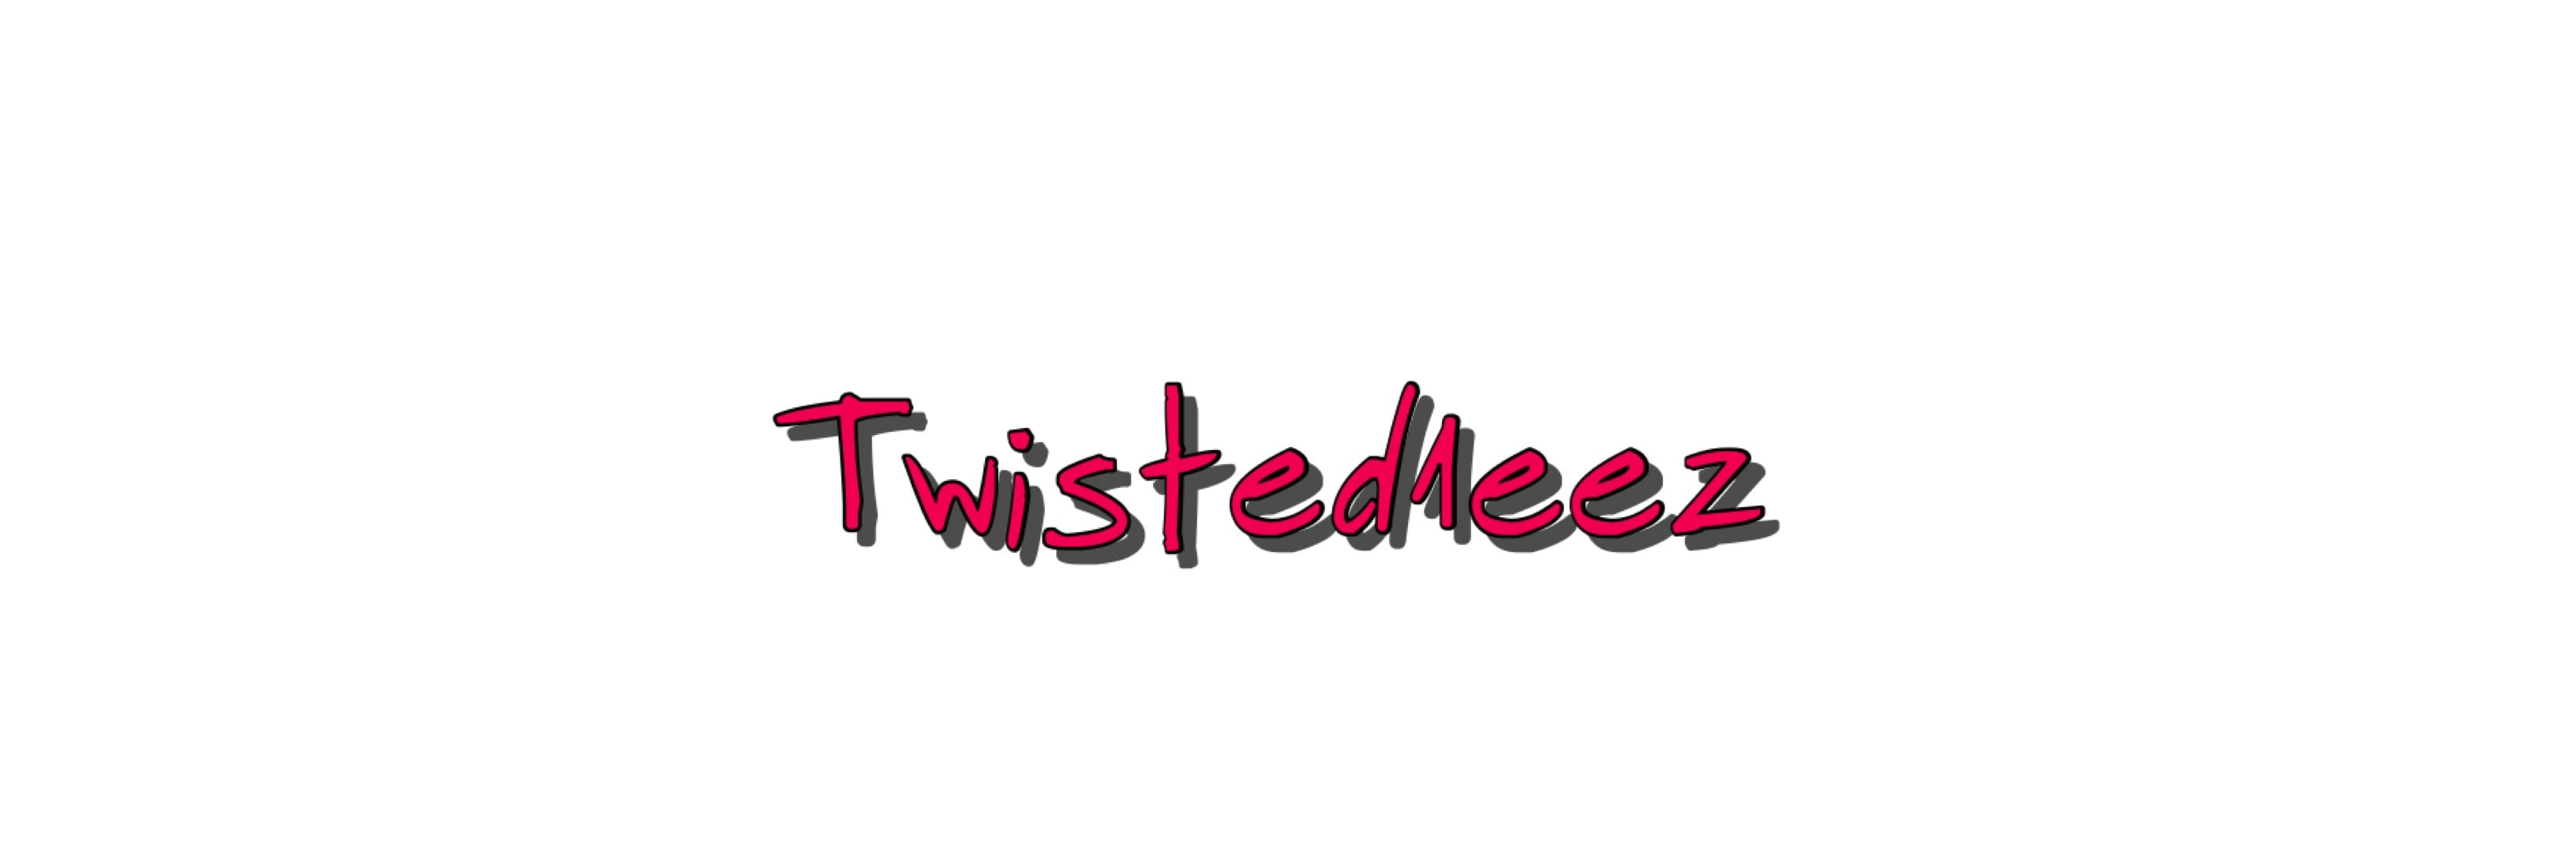 Twisted1Eez